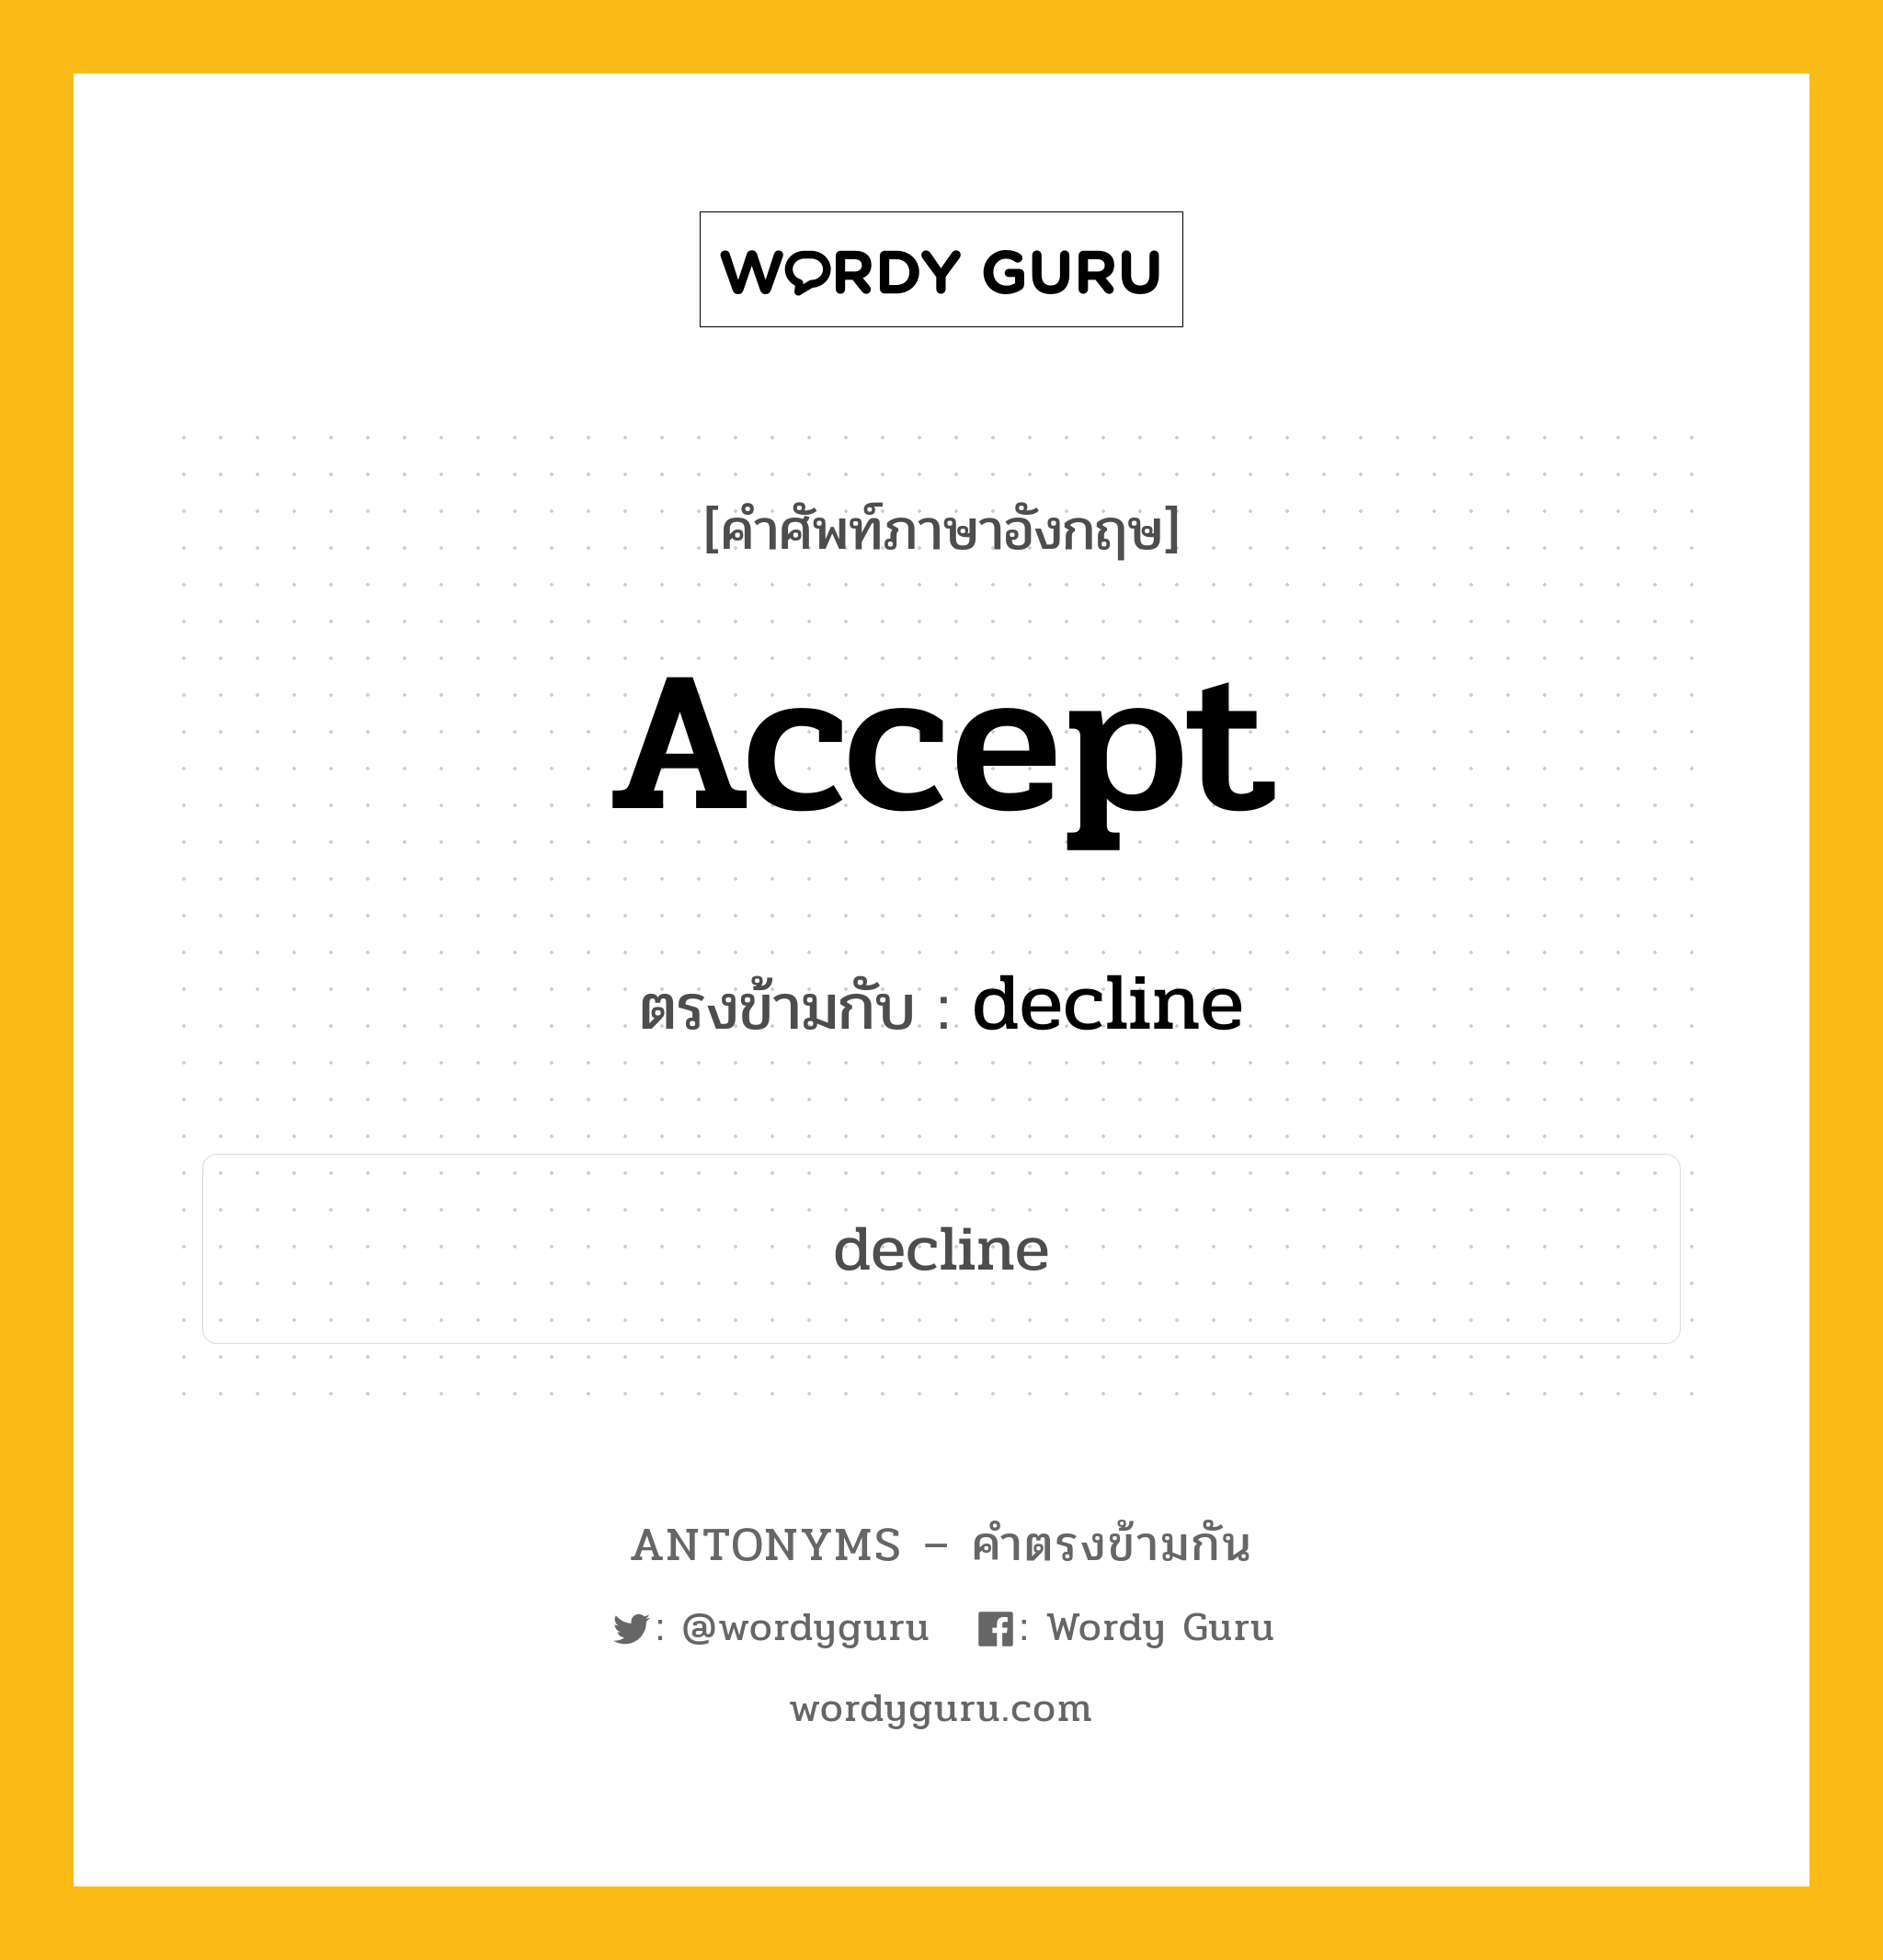 accept เป็นคำตรงข้ามกับคำไหนบ้าง?, คำศัพท์ภาษาอังกฤษ accept ตรงข้ามกับ decline หมวด decline